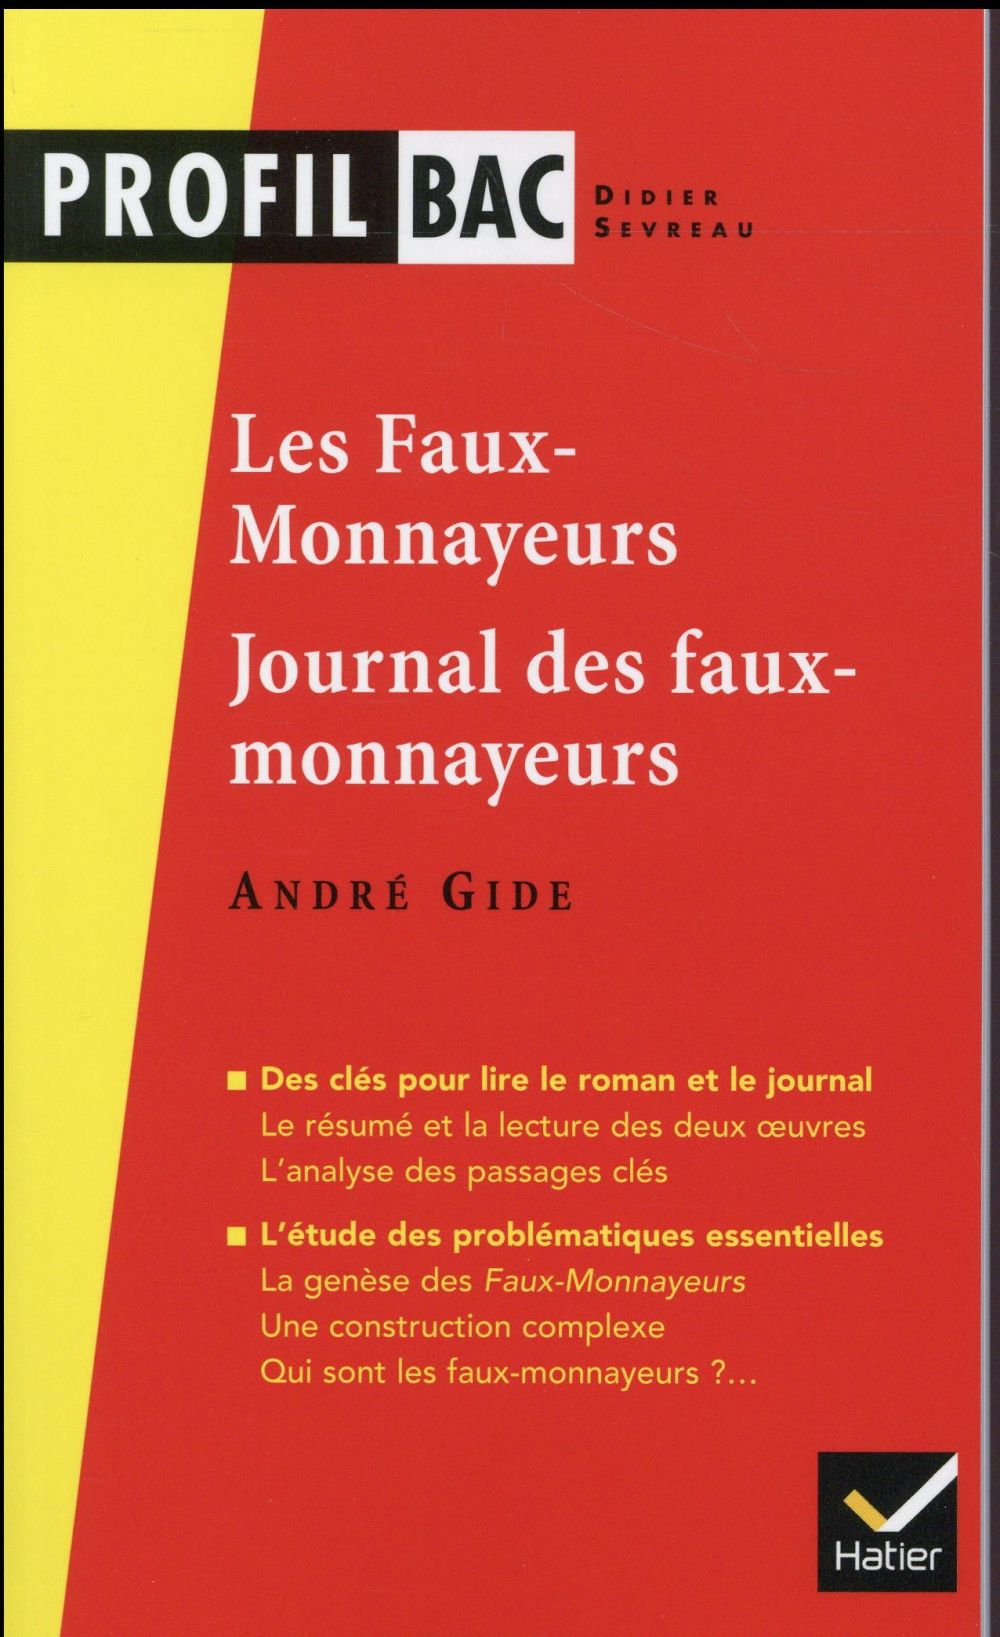 PROFIL - GIDE (ANDRE), LES FAUX-MONNAYEURS, LE JOURNAL DES FAUX-MONNAYEURS - ANALYSE LITTERAIRE DE L